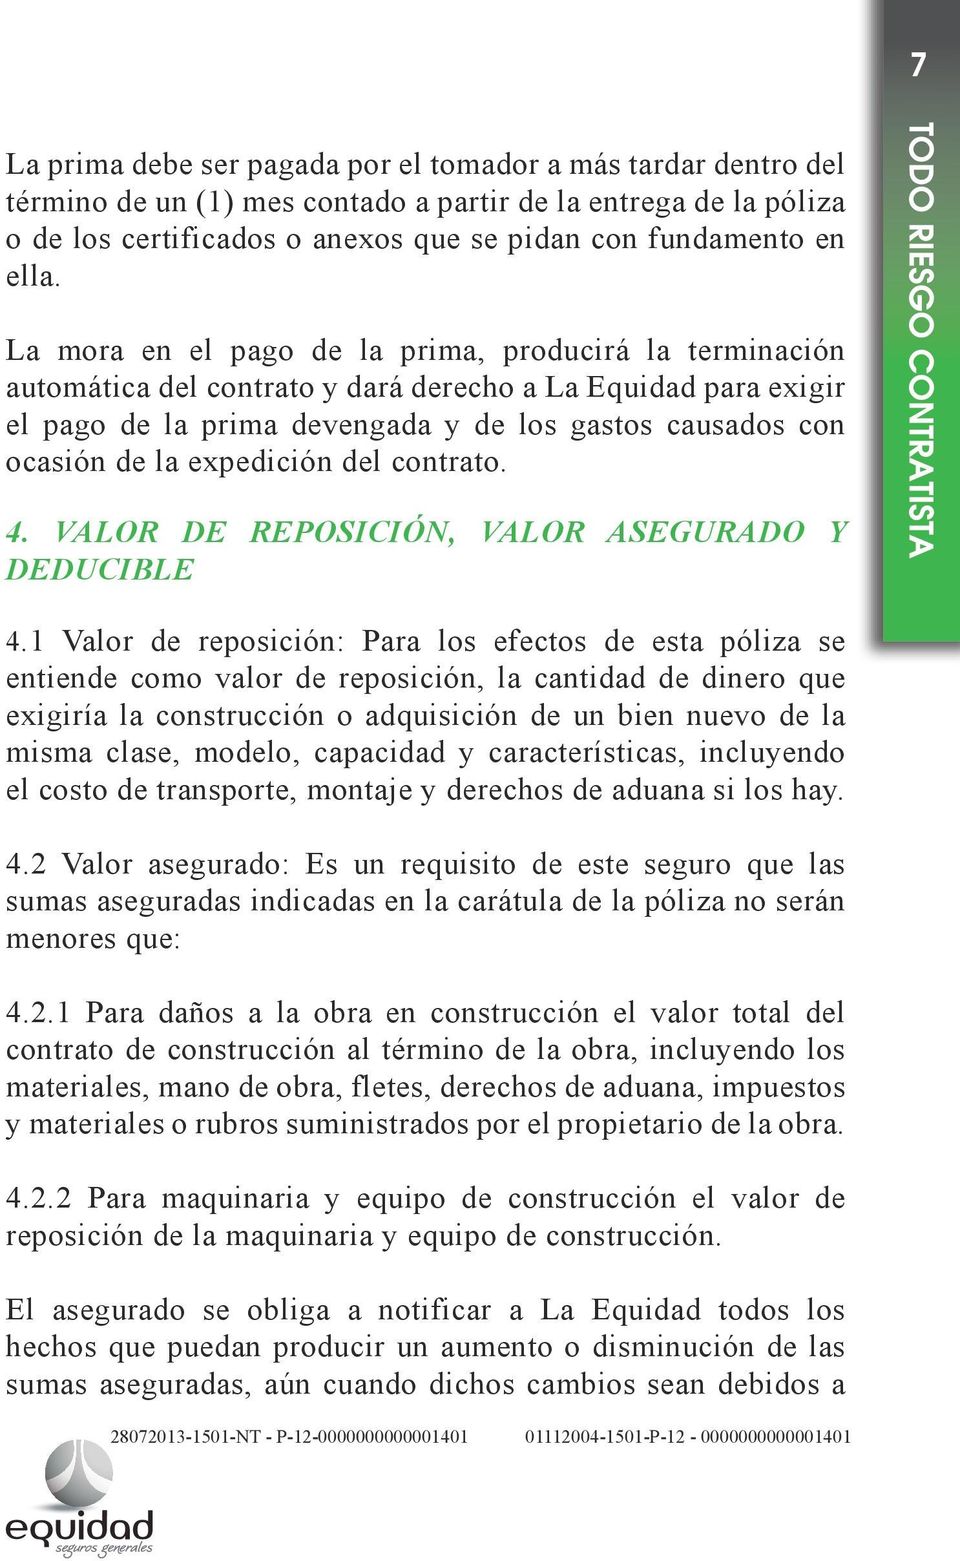 expedición del contrato. 4. VALOR DE REPOSICIÓN, VALOR ASEGURADO Y DEDUCIBLE 4.